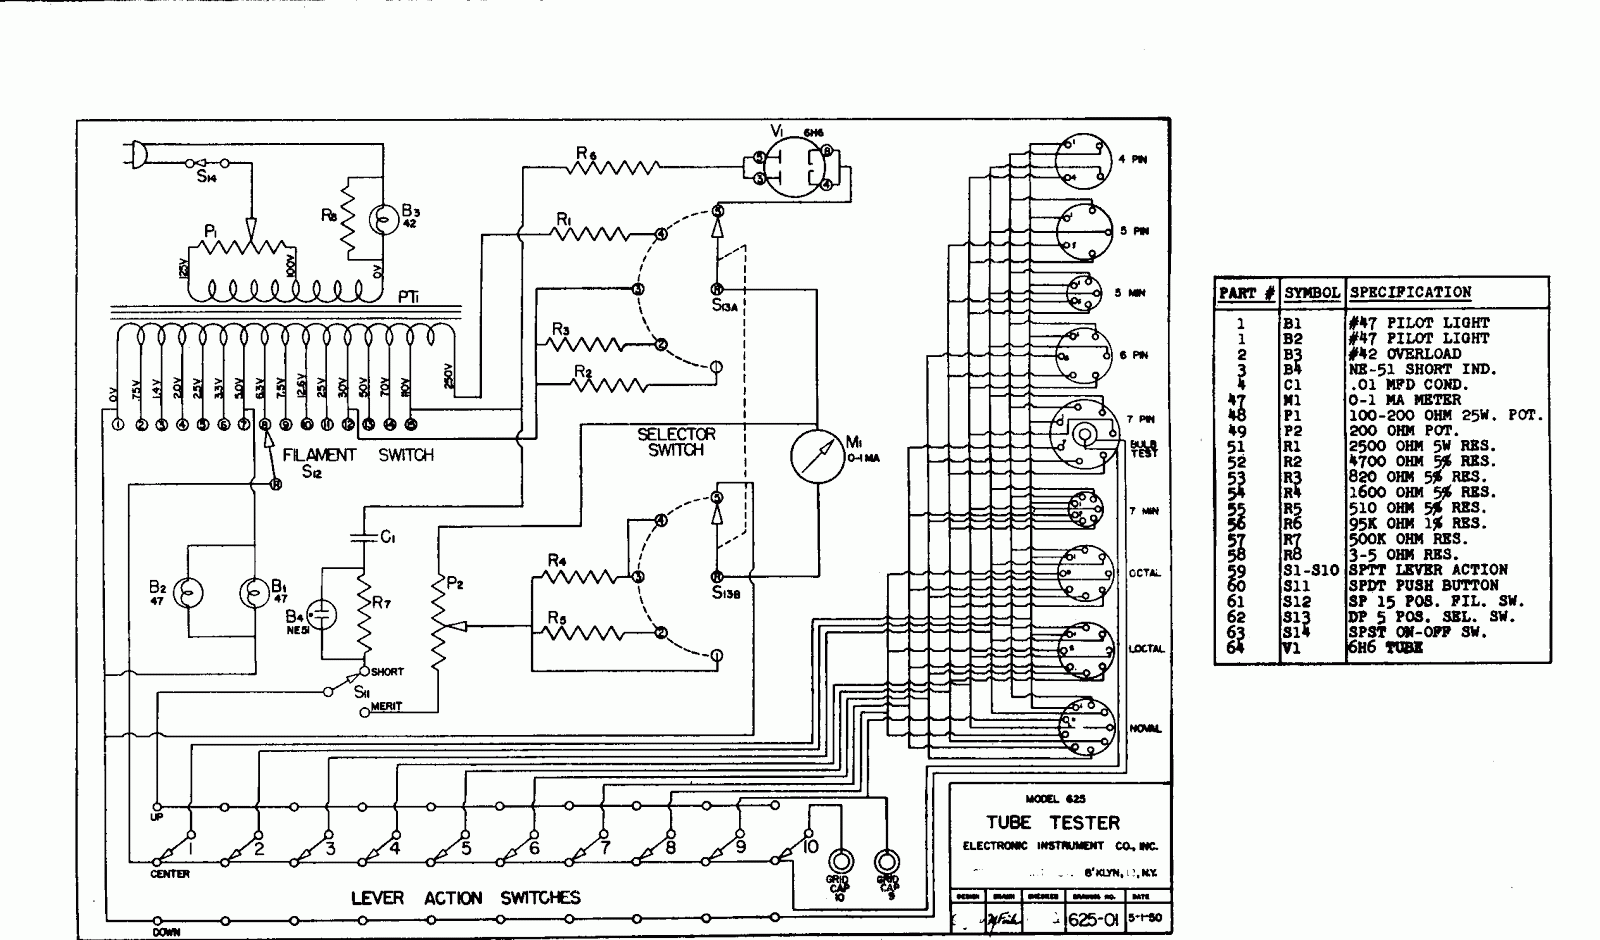 Eico 625 Tube Tester Chart